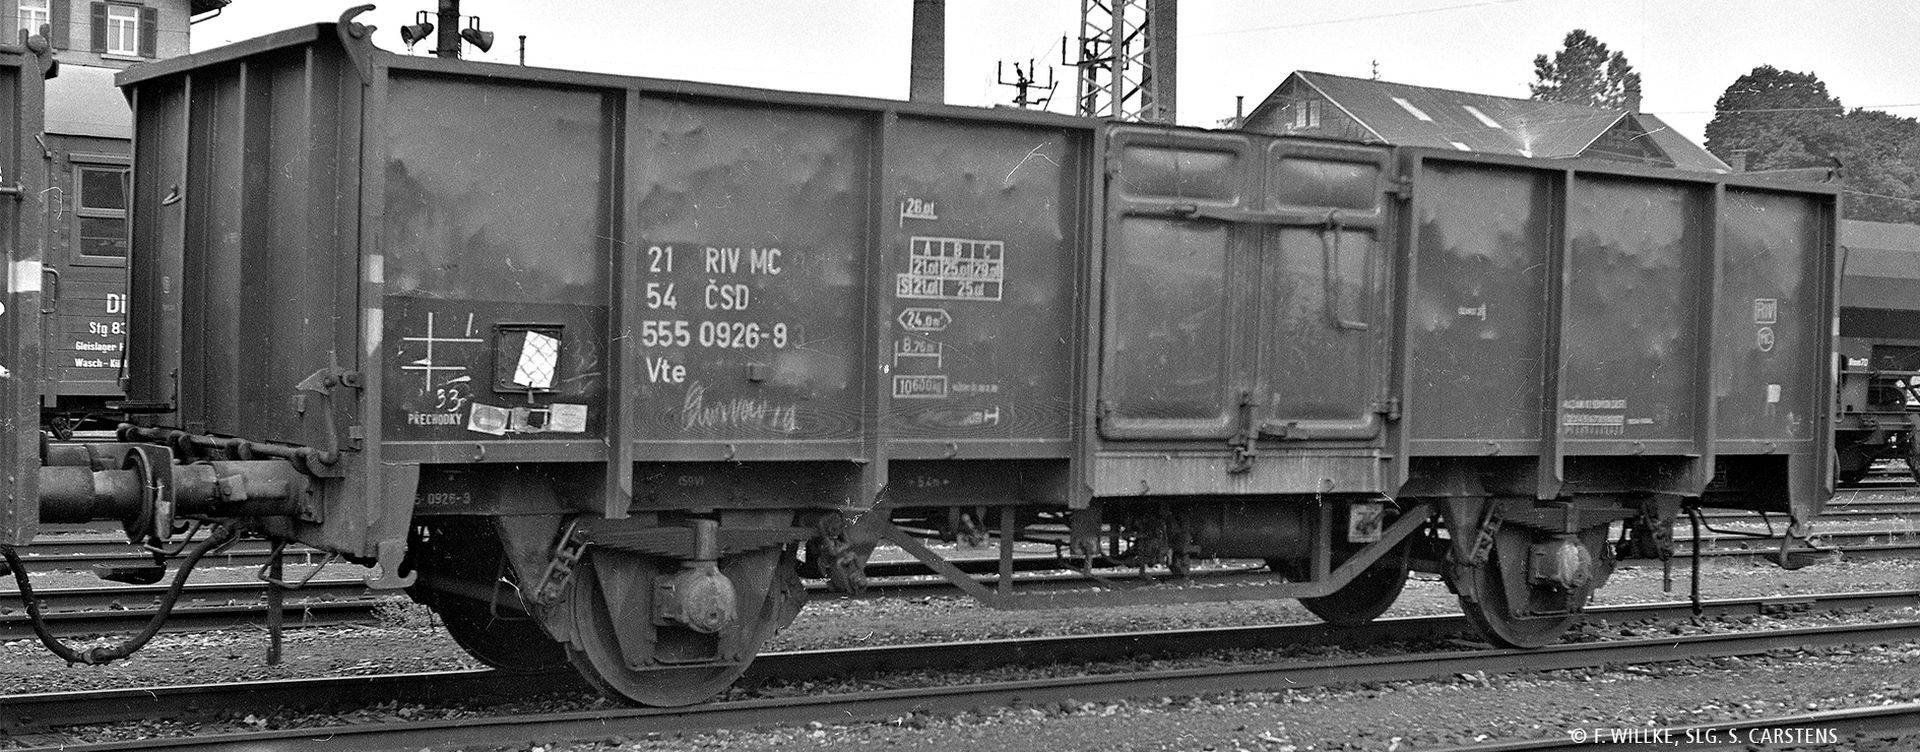 Brawa 50077 - Offener Güterwagen Vte, CSD, Ep.IV